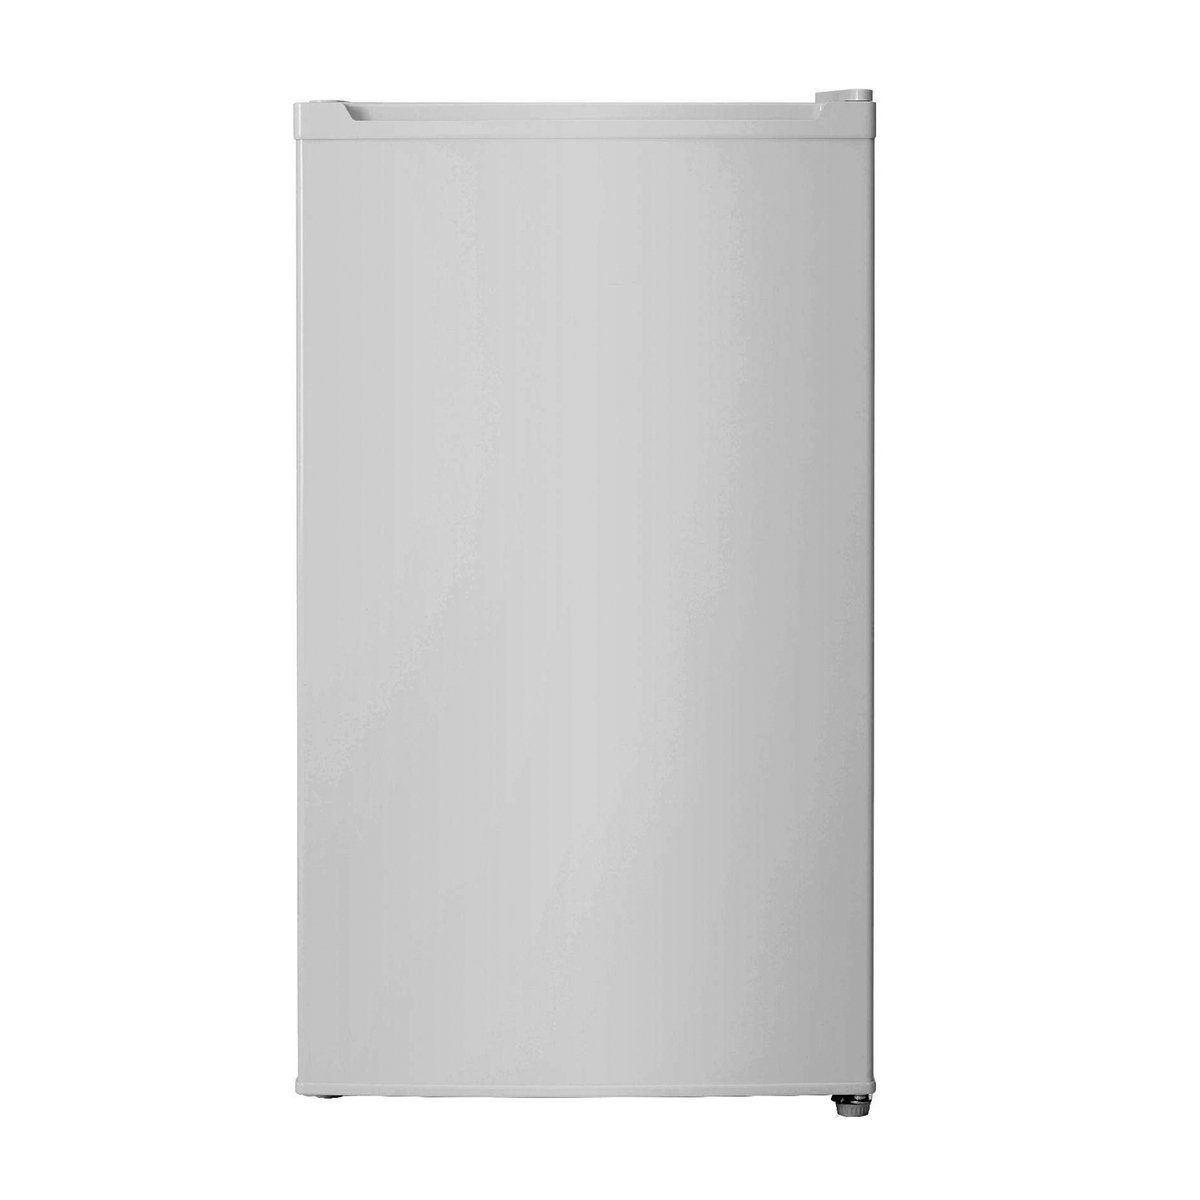 Hisense Single Door Refrigerator RR120DAGS 120Ltr